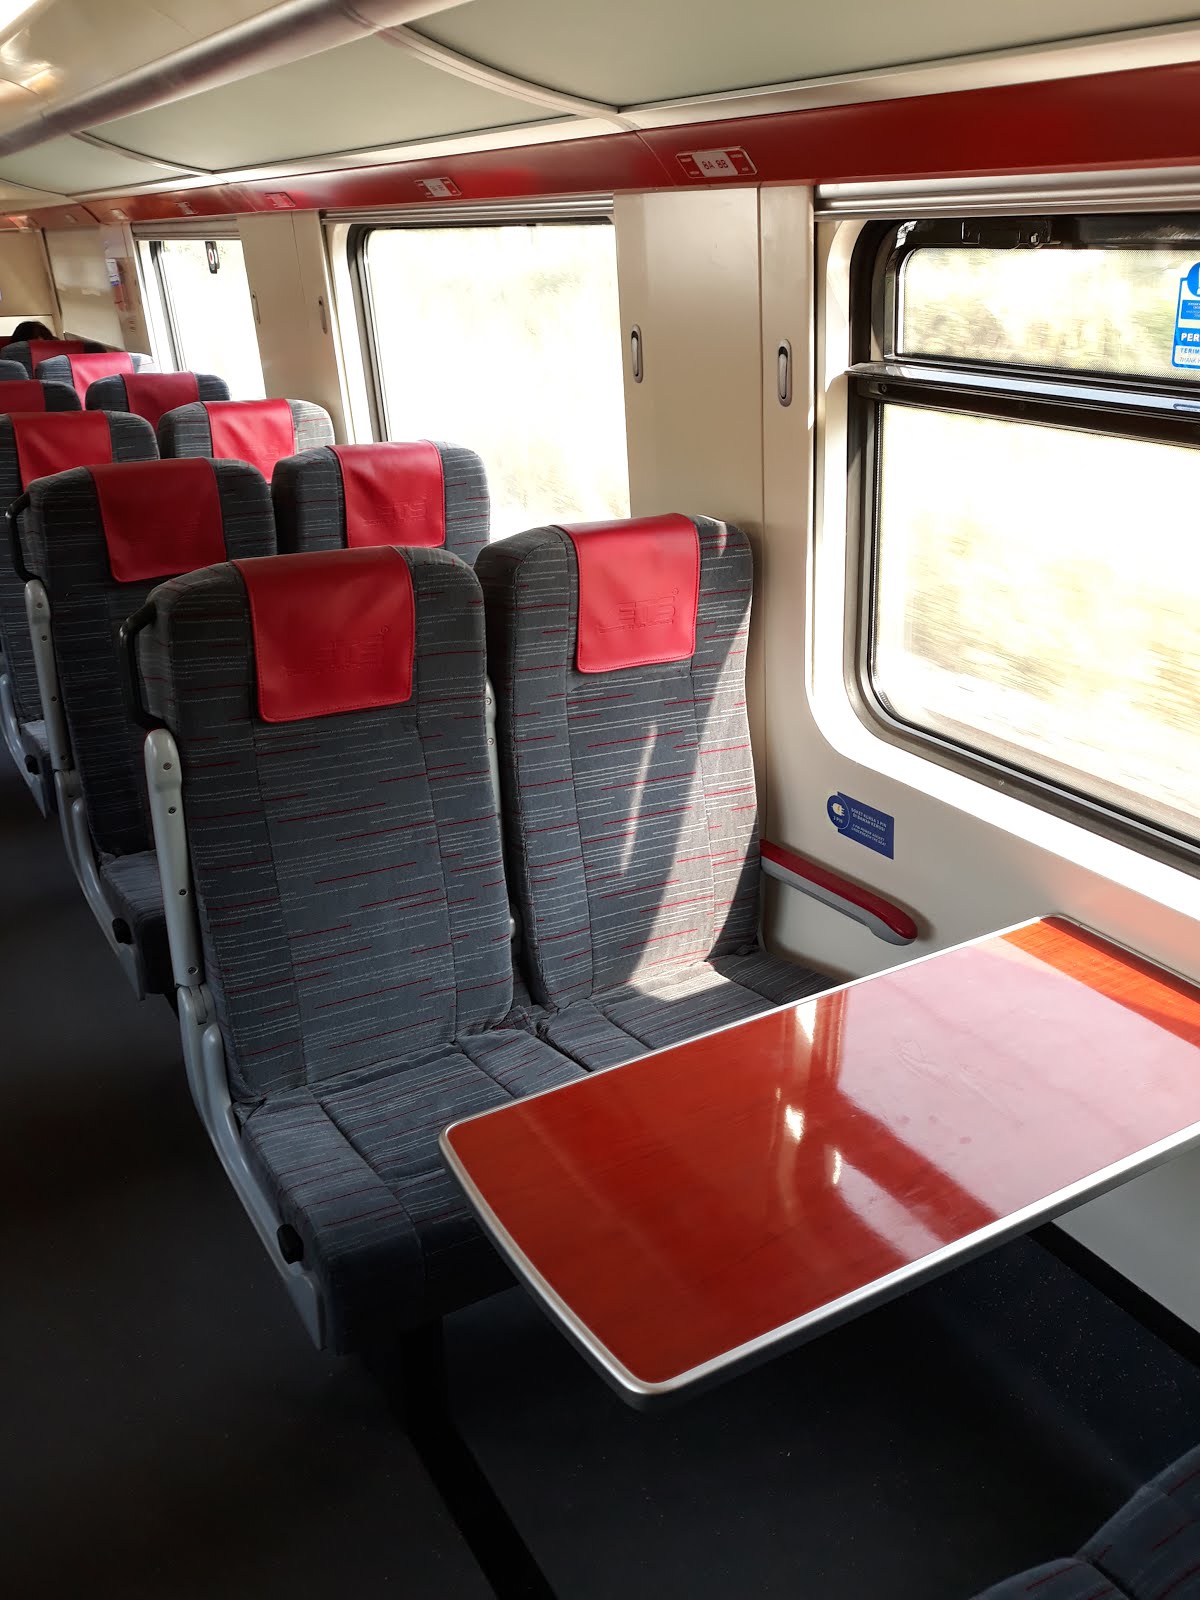 ETS Platinum Business Class - Premium, First-class train ...